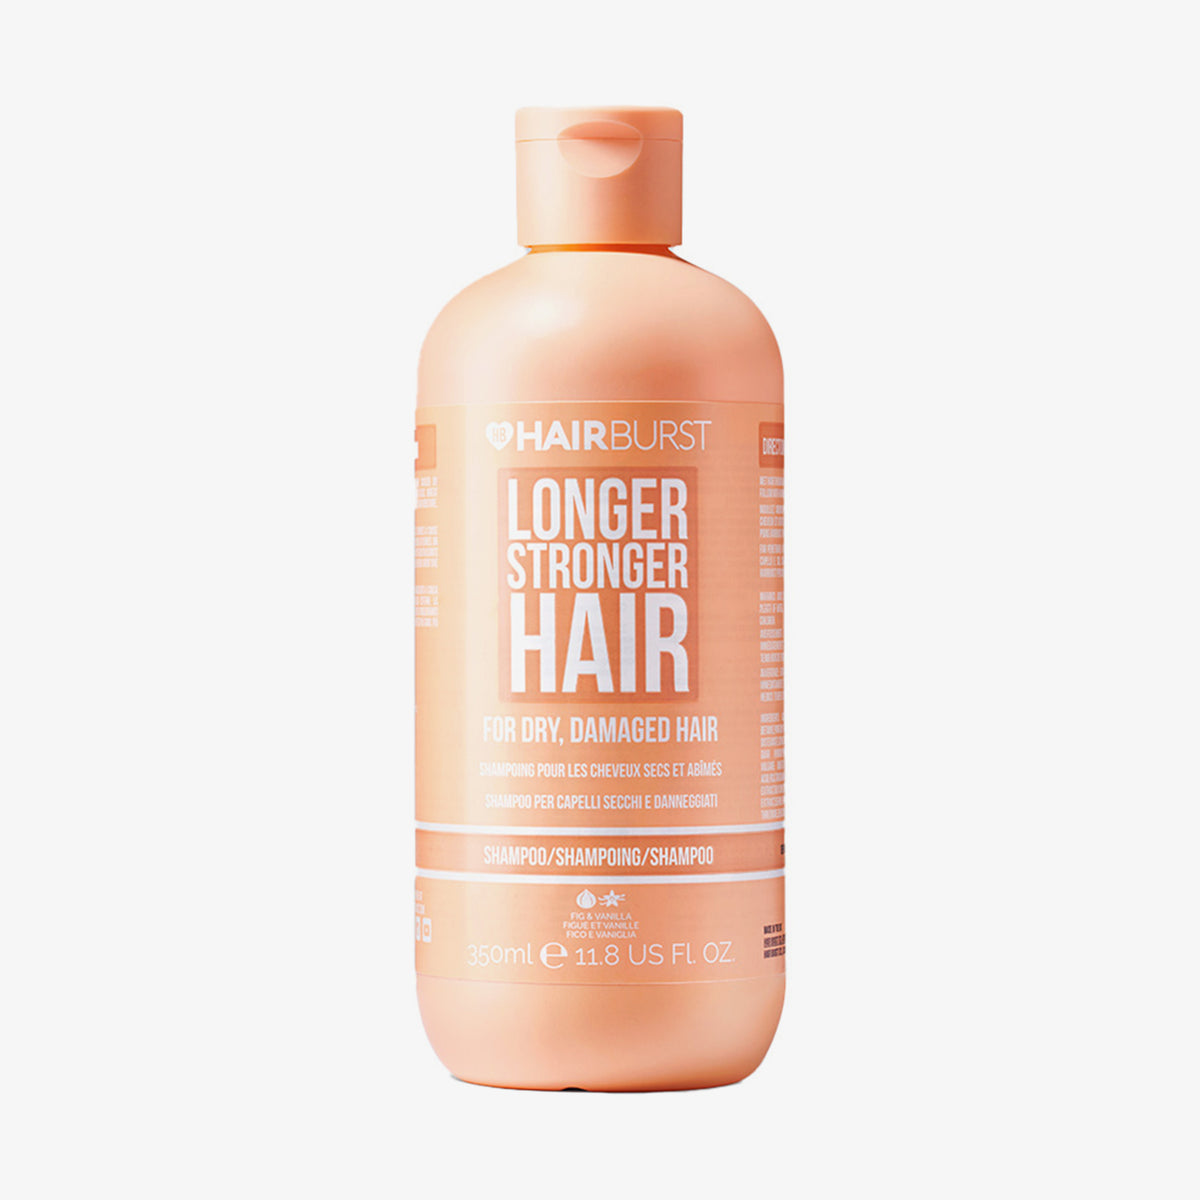 Hairburst | Shampoo for Dry Damaged Hair